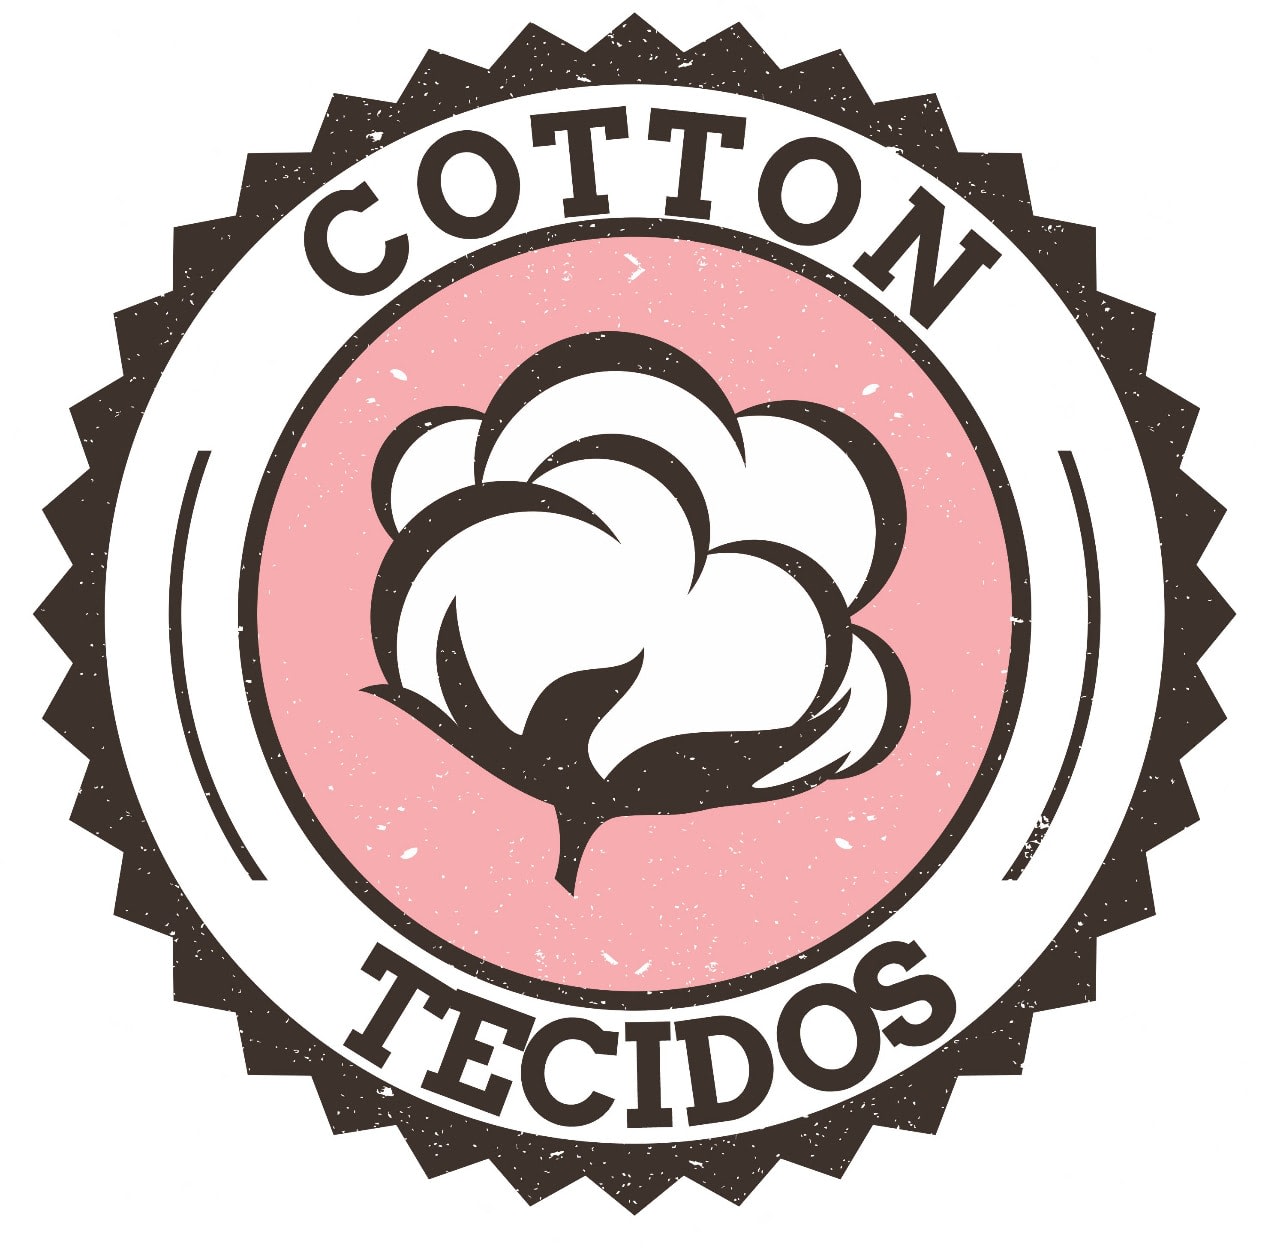 Cotton Tecidos